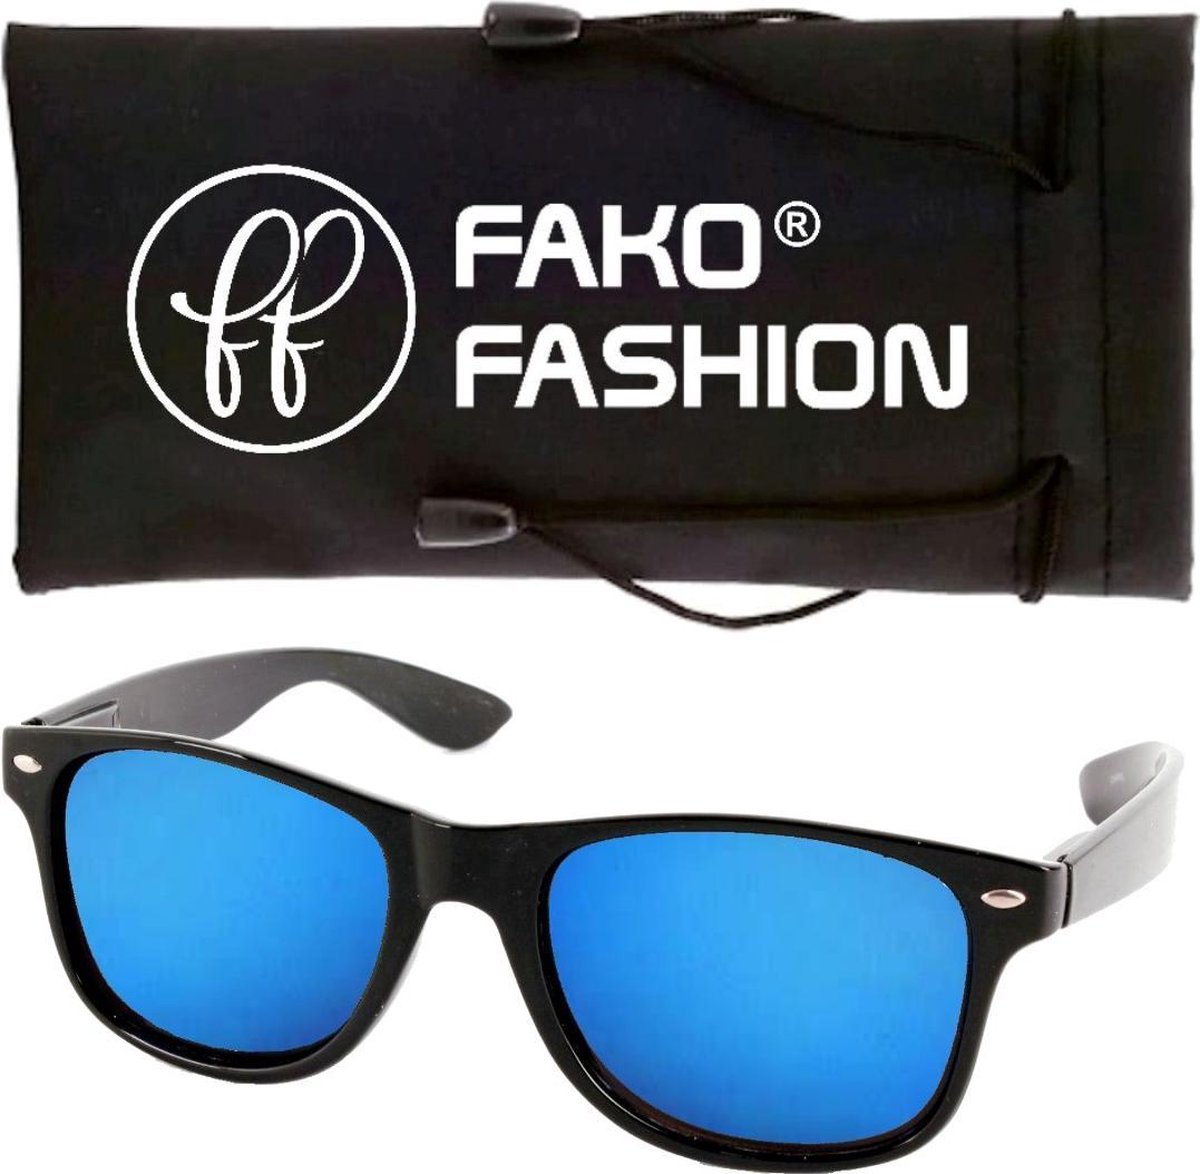 Fako Fashion® - Zonnebril - Mat Zwart - Spiegel Blauw